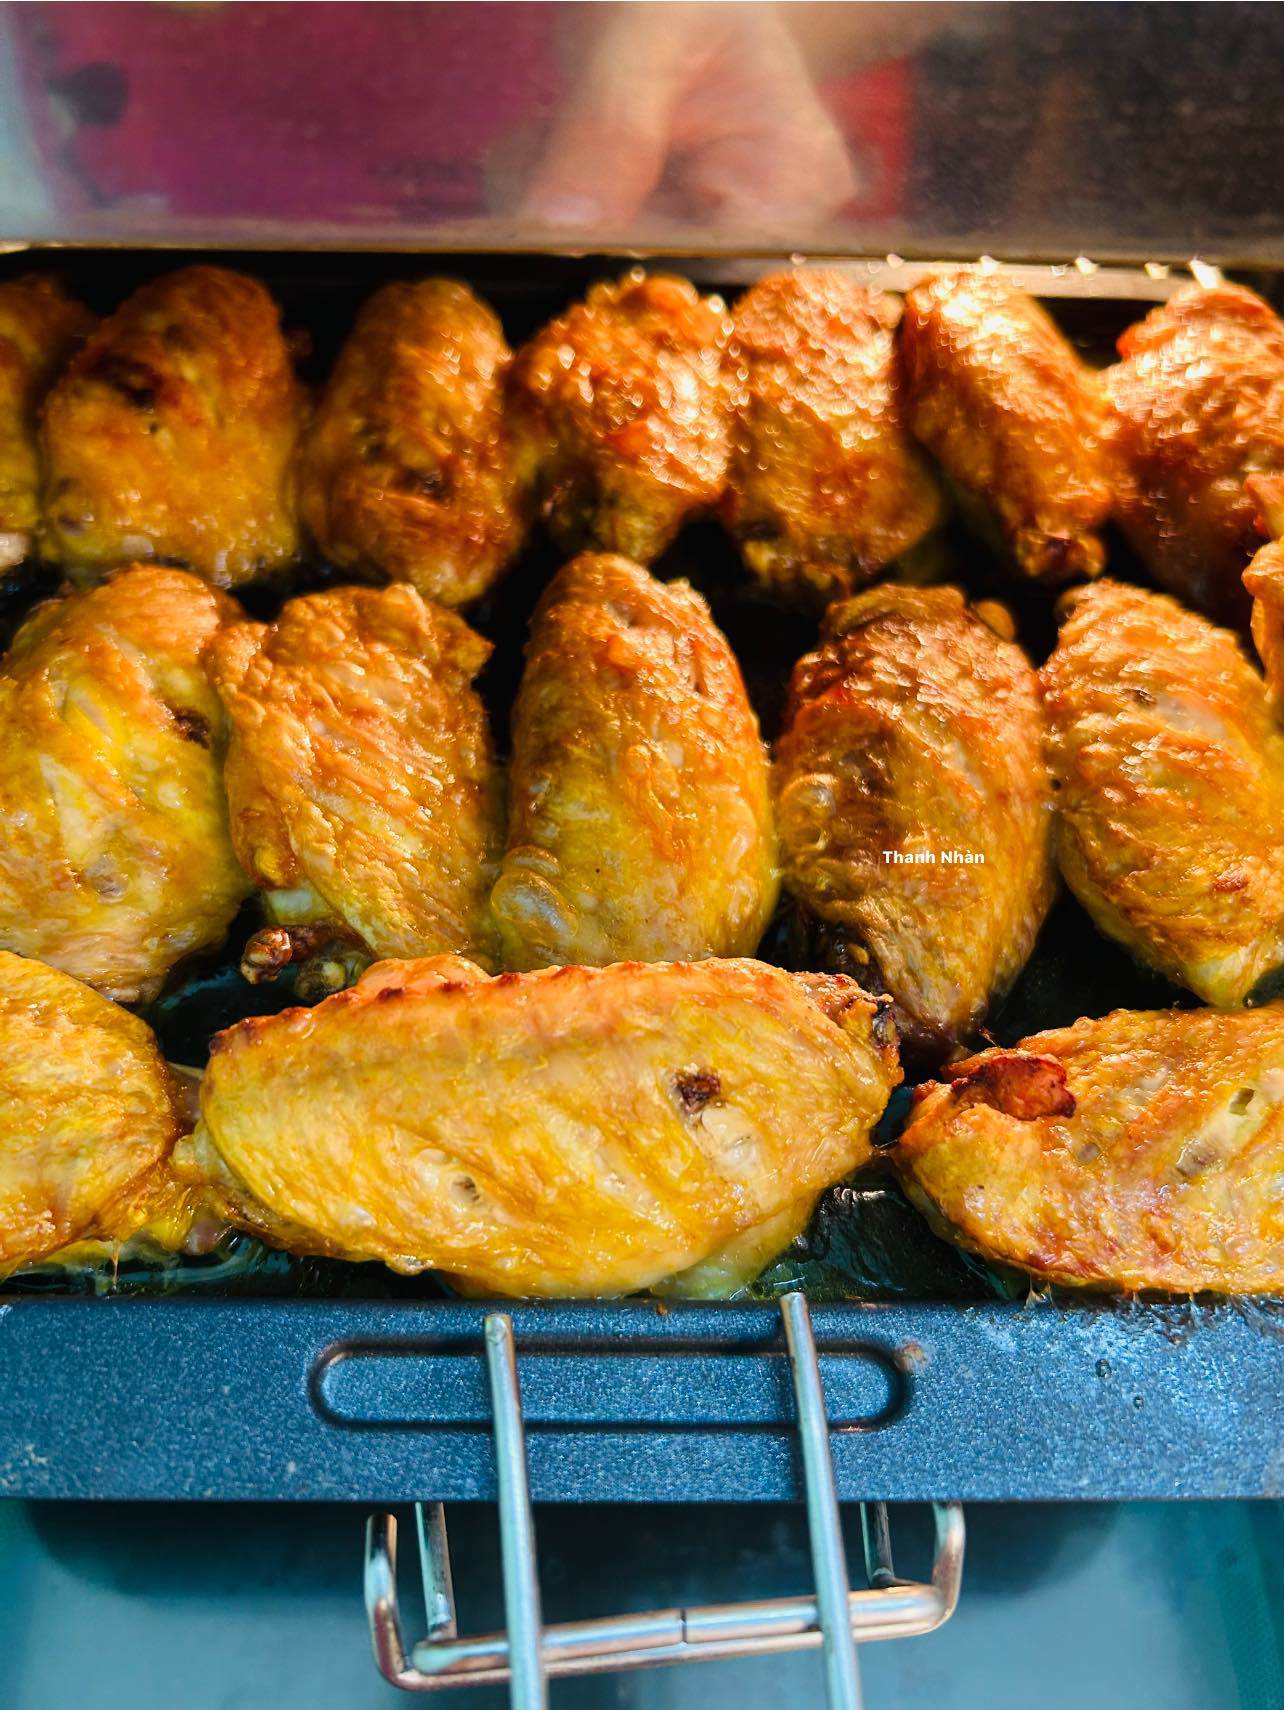 Nướng cánh gà ở mức nhiệt 200℃ trong khoảng 20 phút.